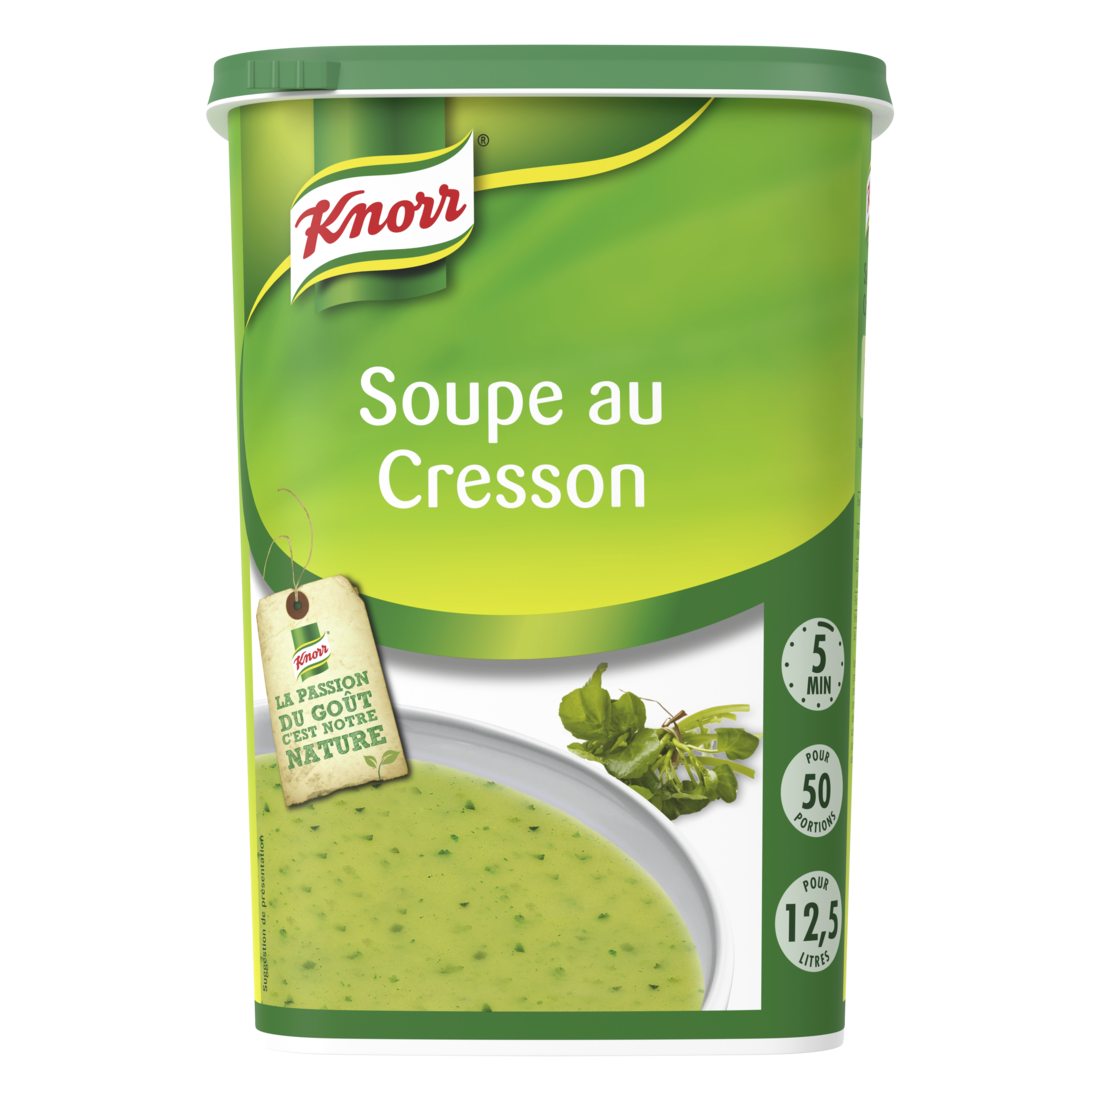 Knorr Soupe au Cresson 750g 50 portions - 